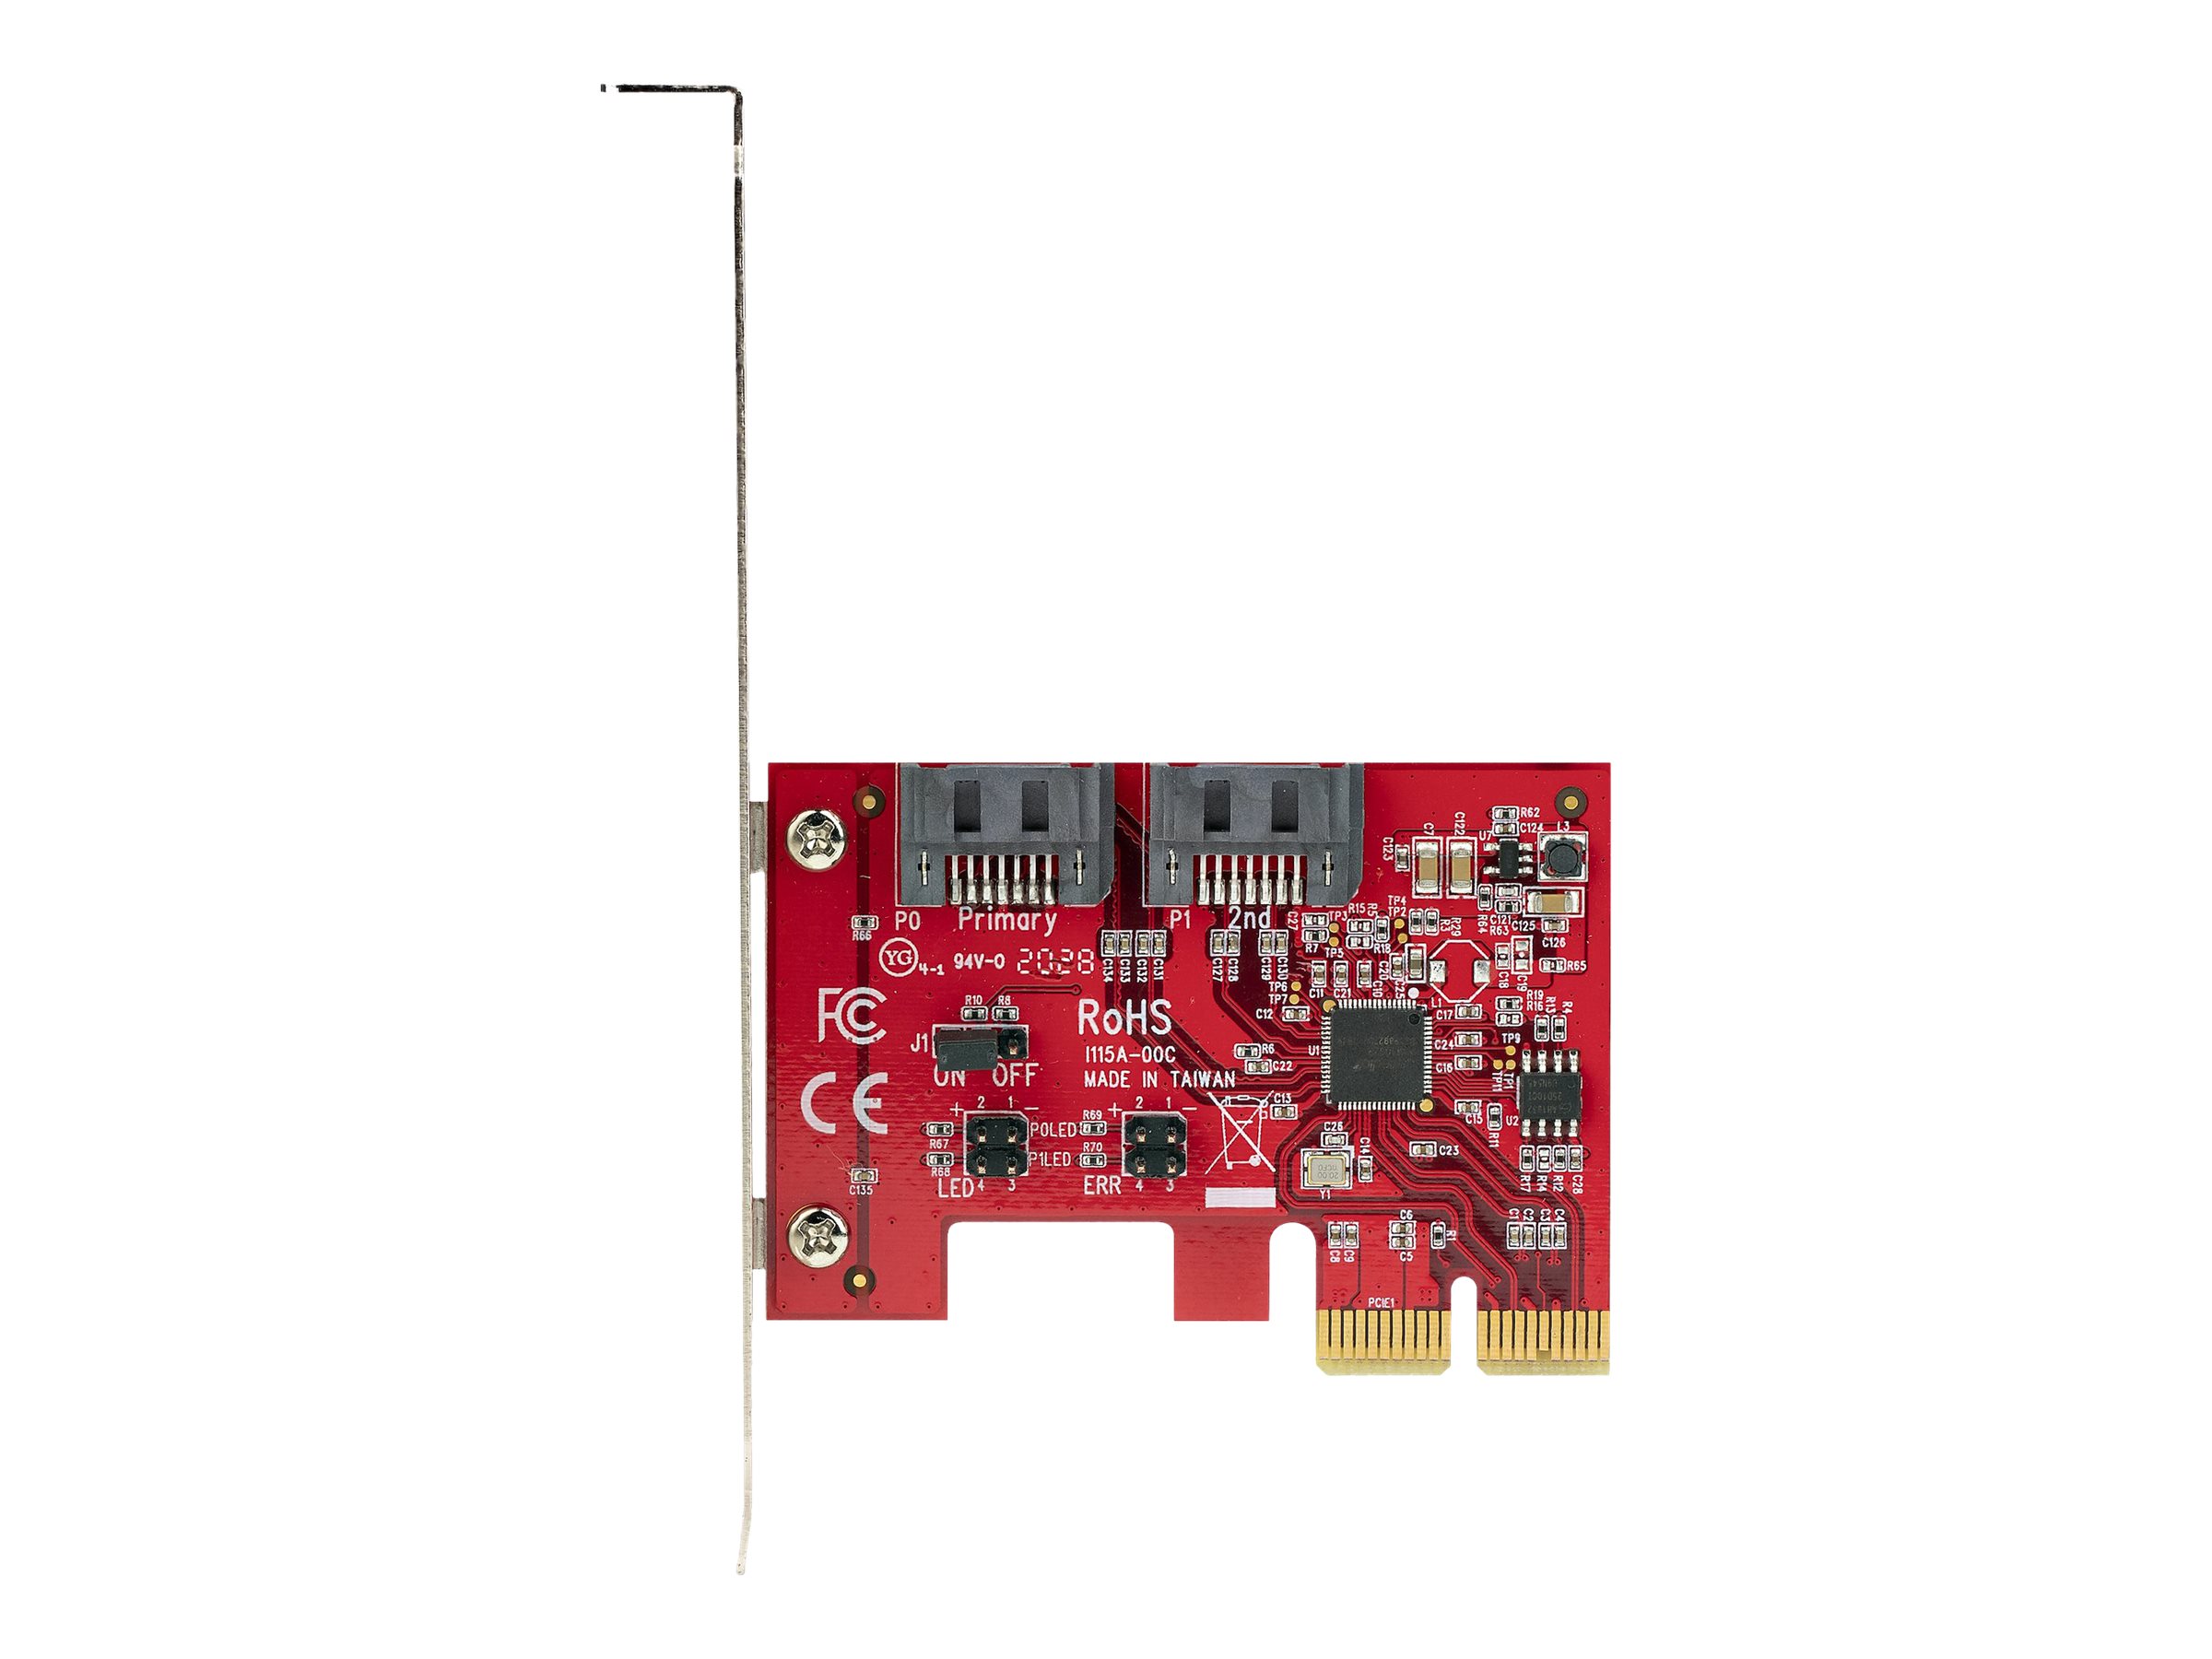 StarTech.com 2 Port PCIe SATA RAID Kontroller - PCIe SATA hardware RAID Controller - PCIe Festplatten/SSD RAID Controller/Karte - Full/Low Profil Blende - ASM1062R SATA RAID (2P6GR-PCIE-SATA-CARD)